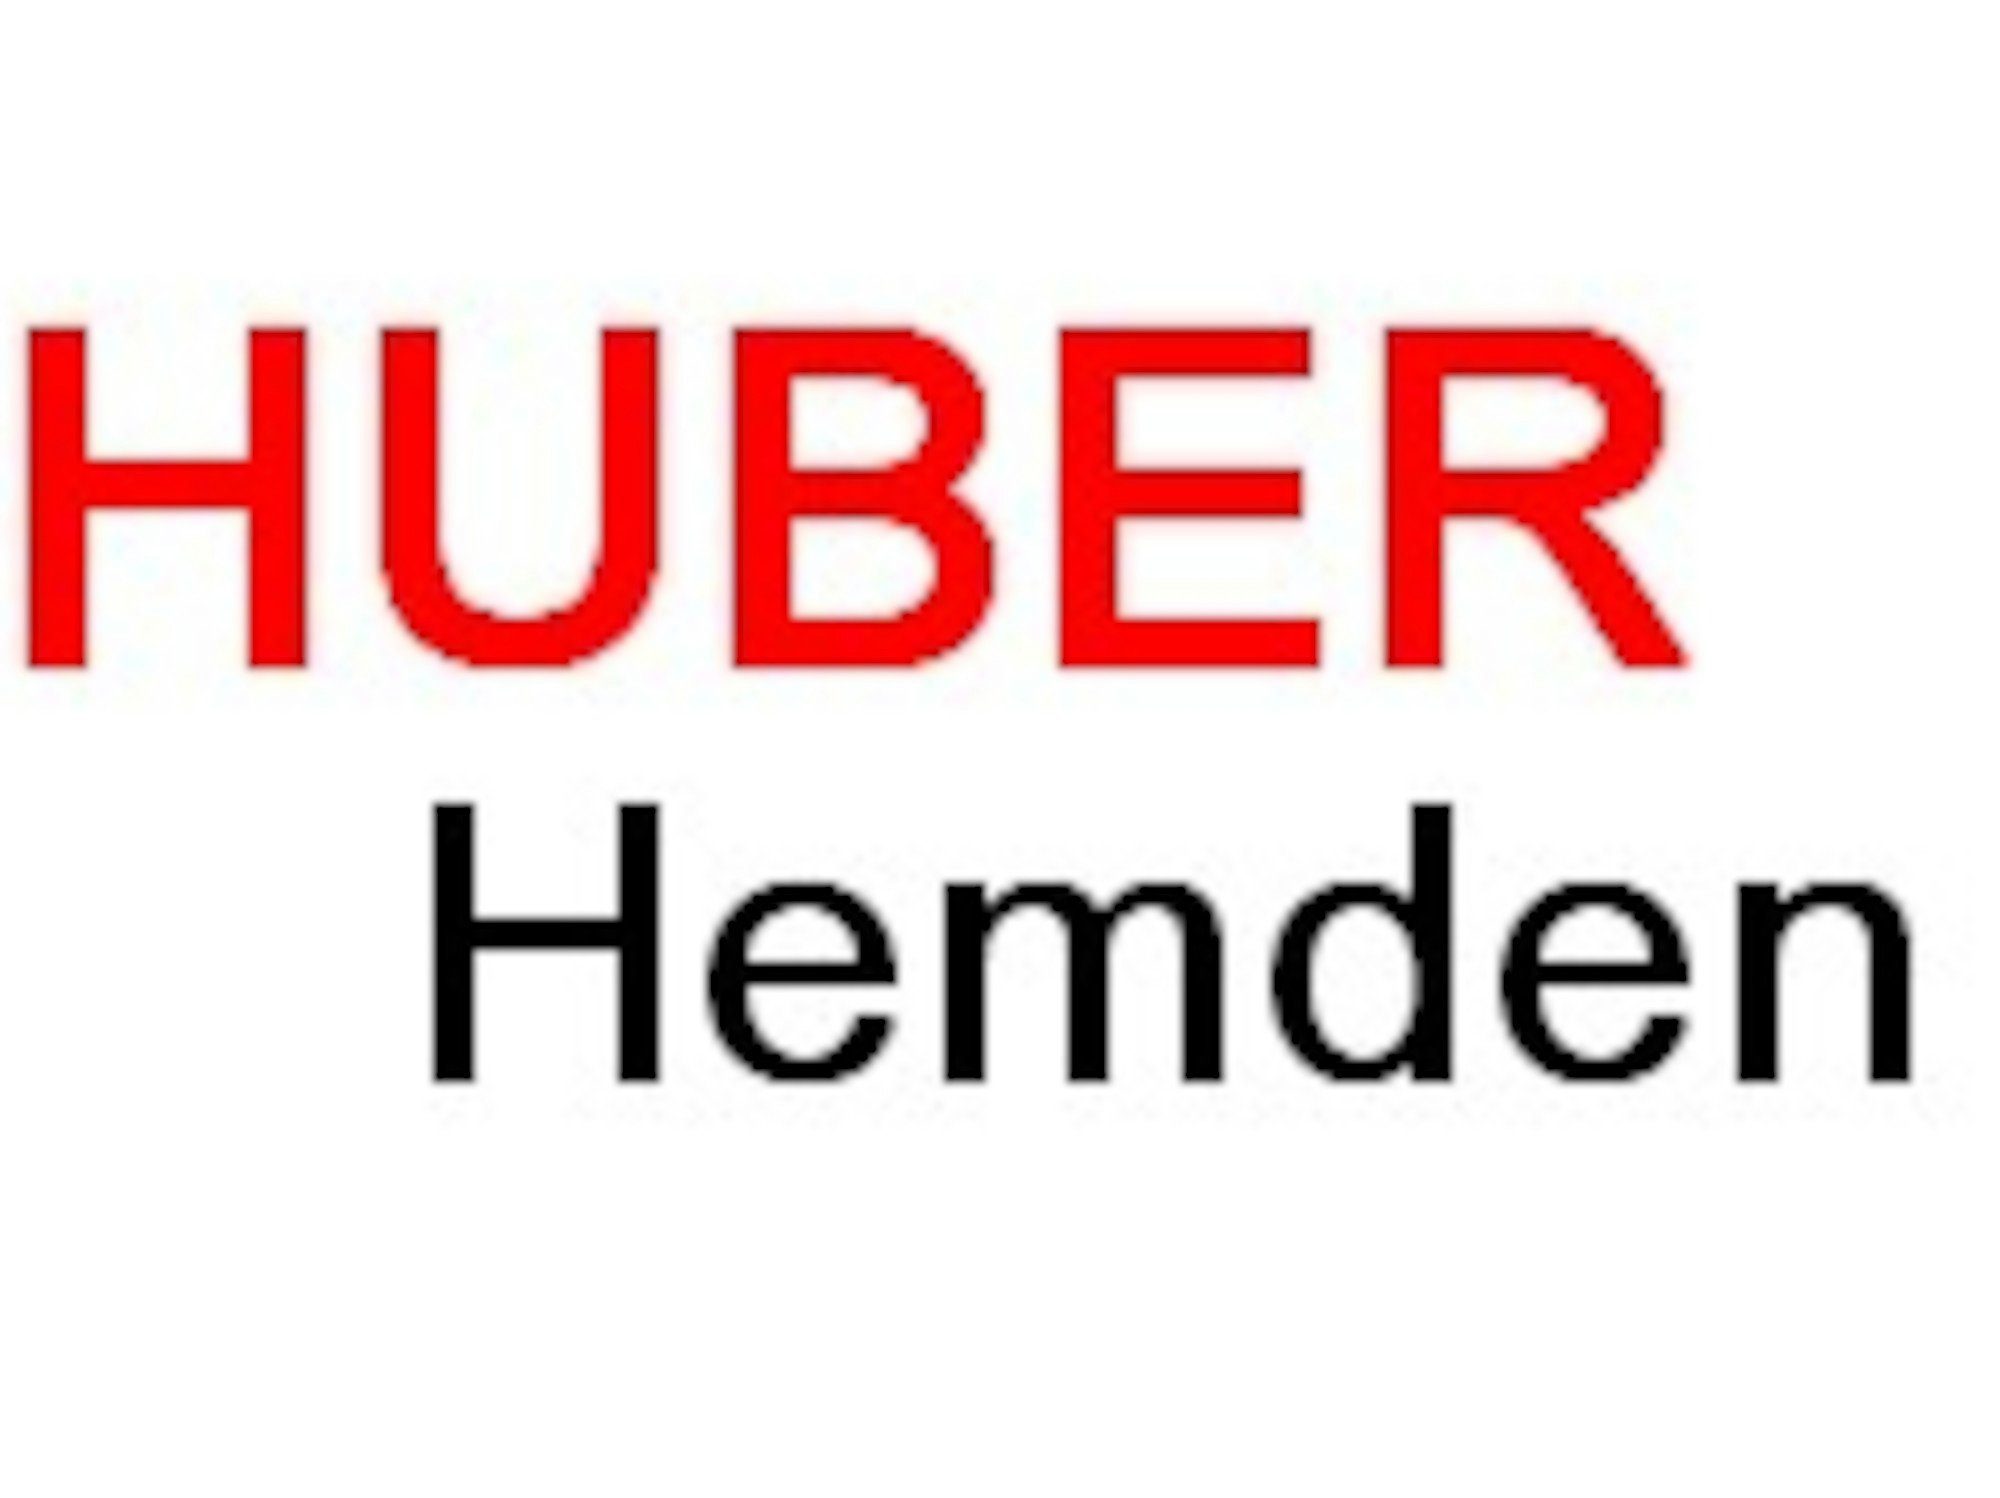 Huber Hemden Kurzarmhemd 100%Leinen-feiner leichter Fit rot Stoff Kurzarm HU-0114 Regular Stehkragen